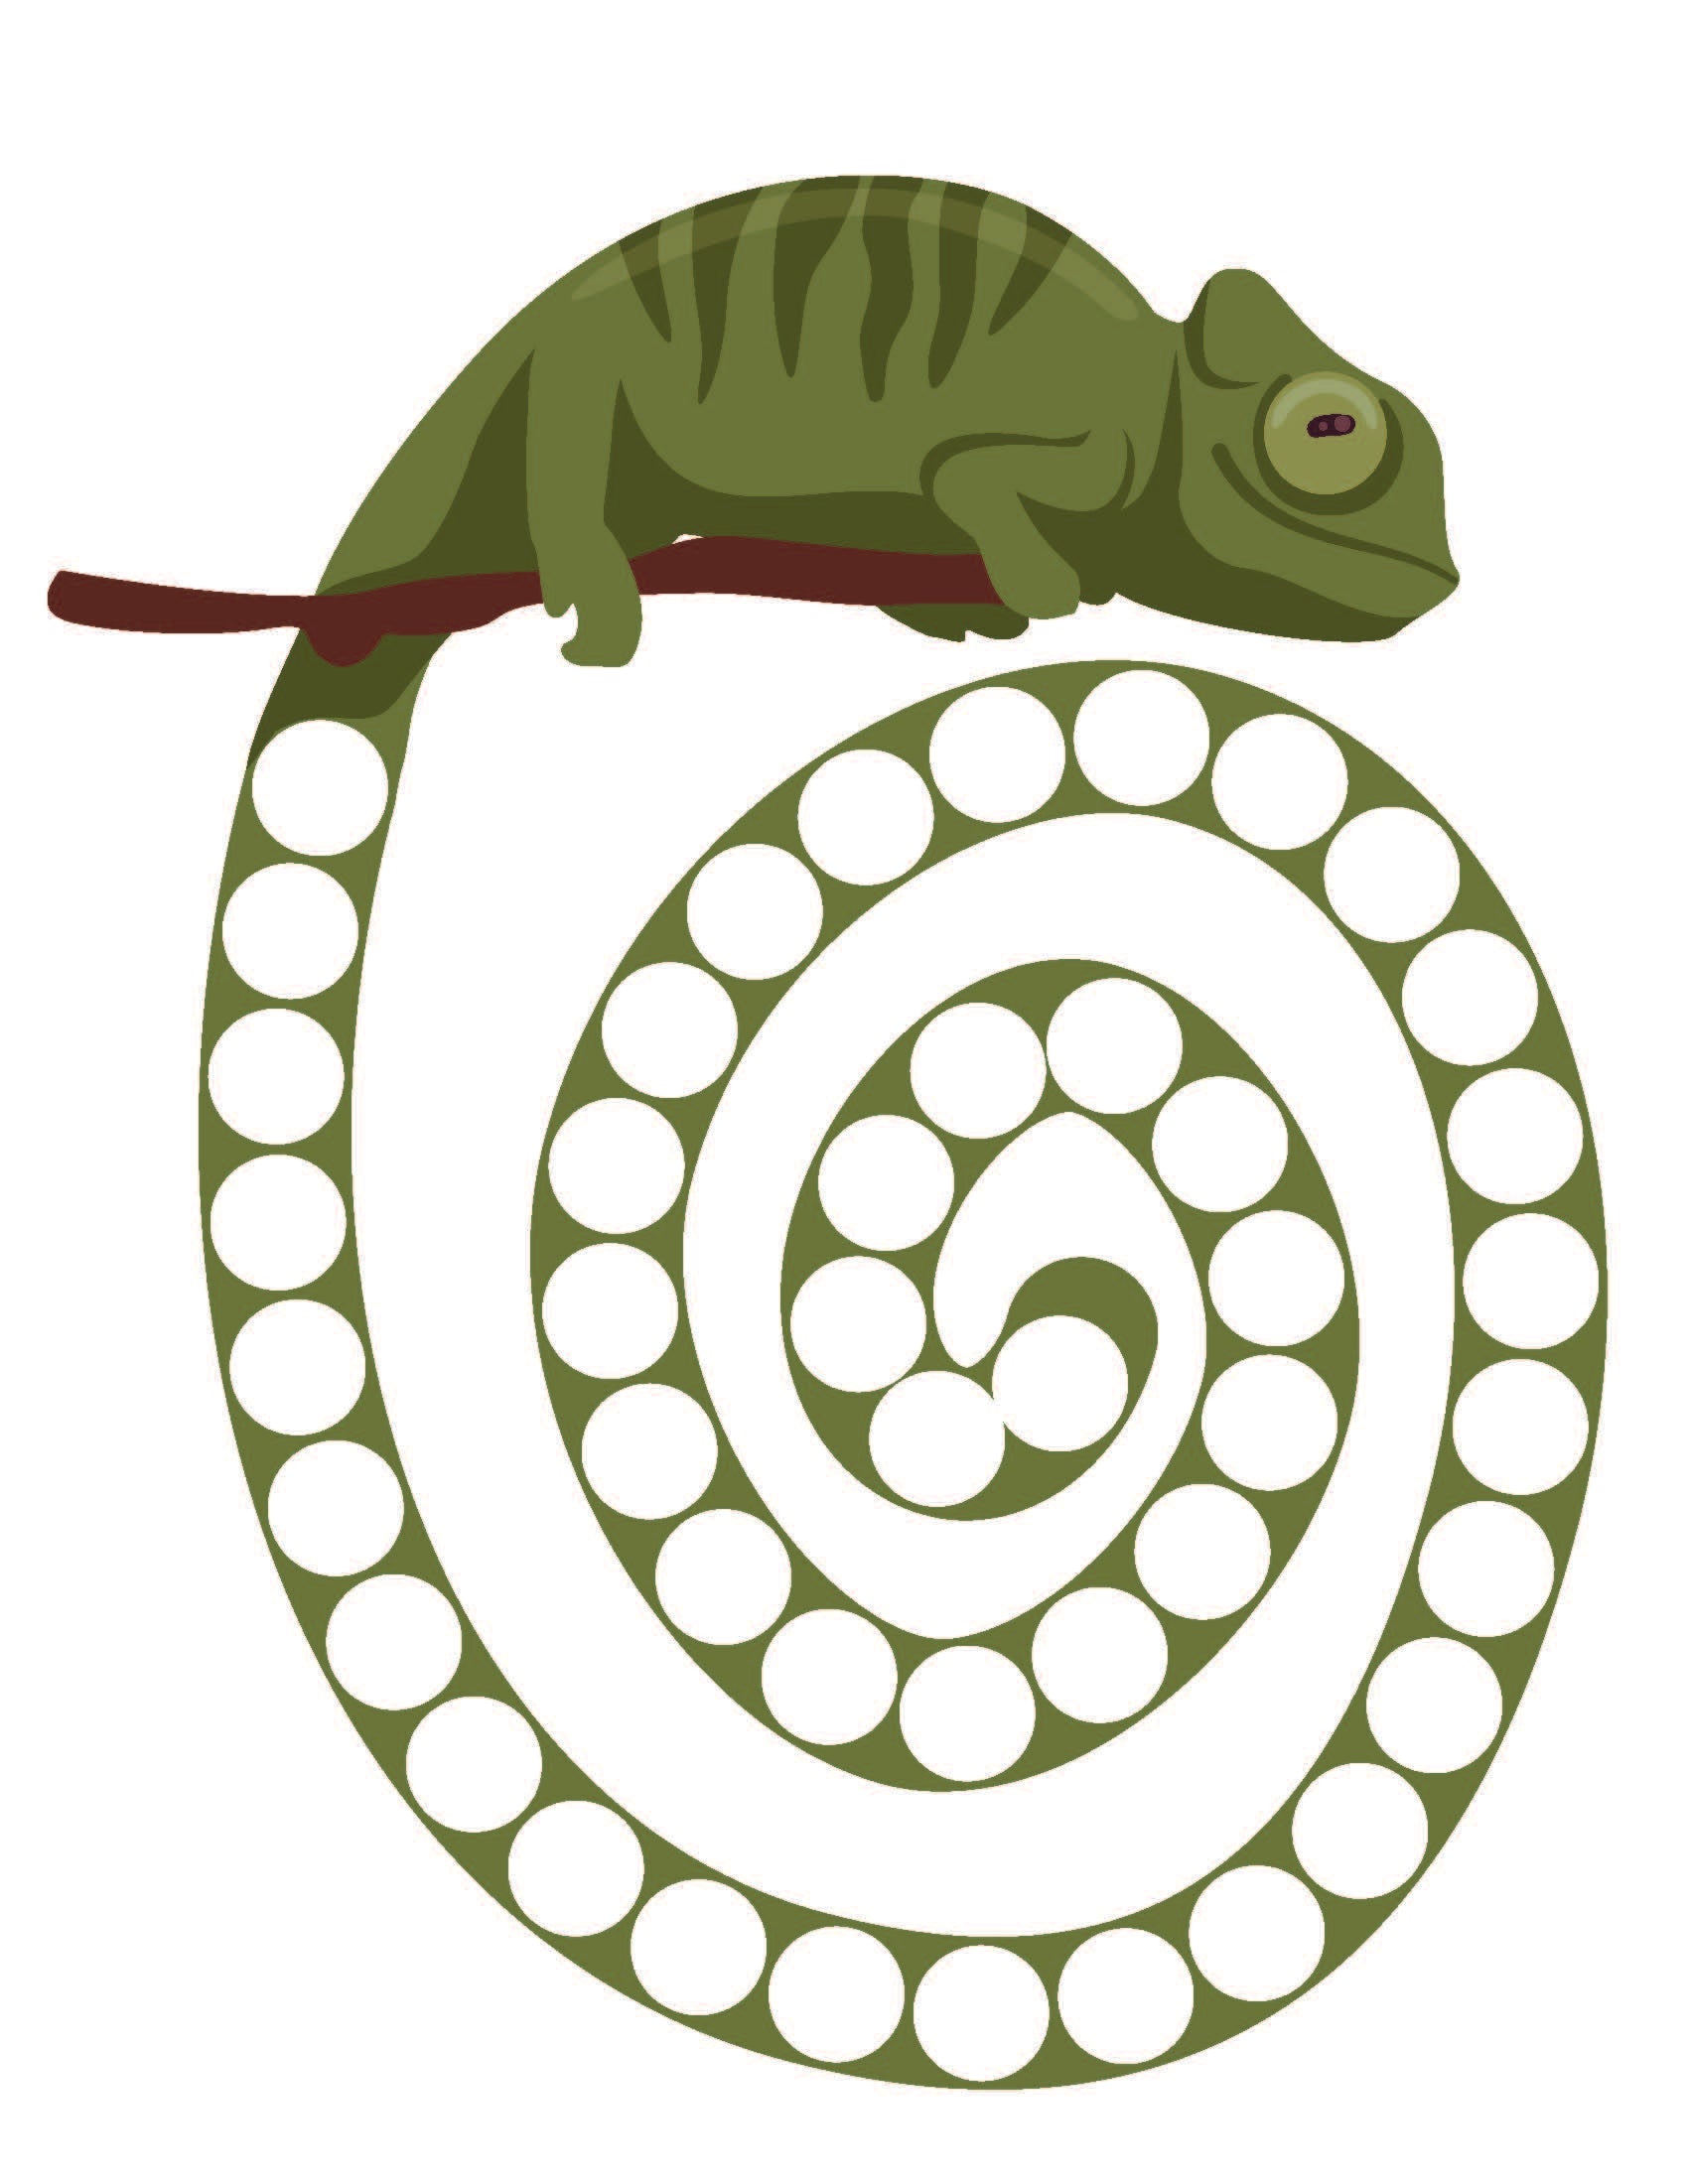 Chameleon Pattern Game